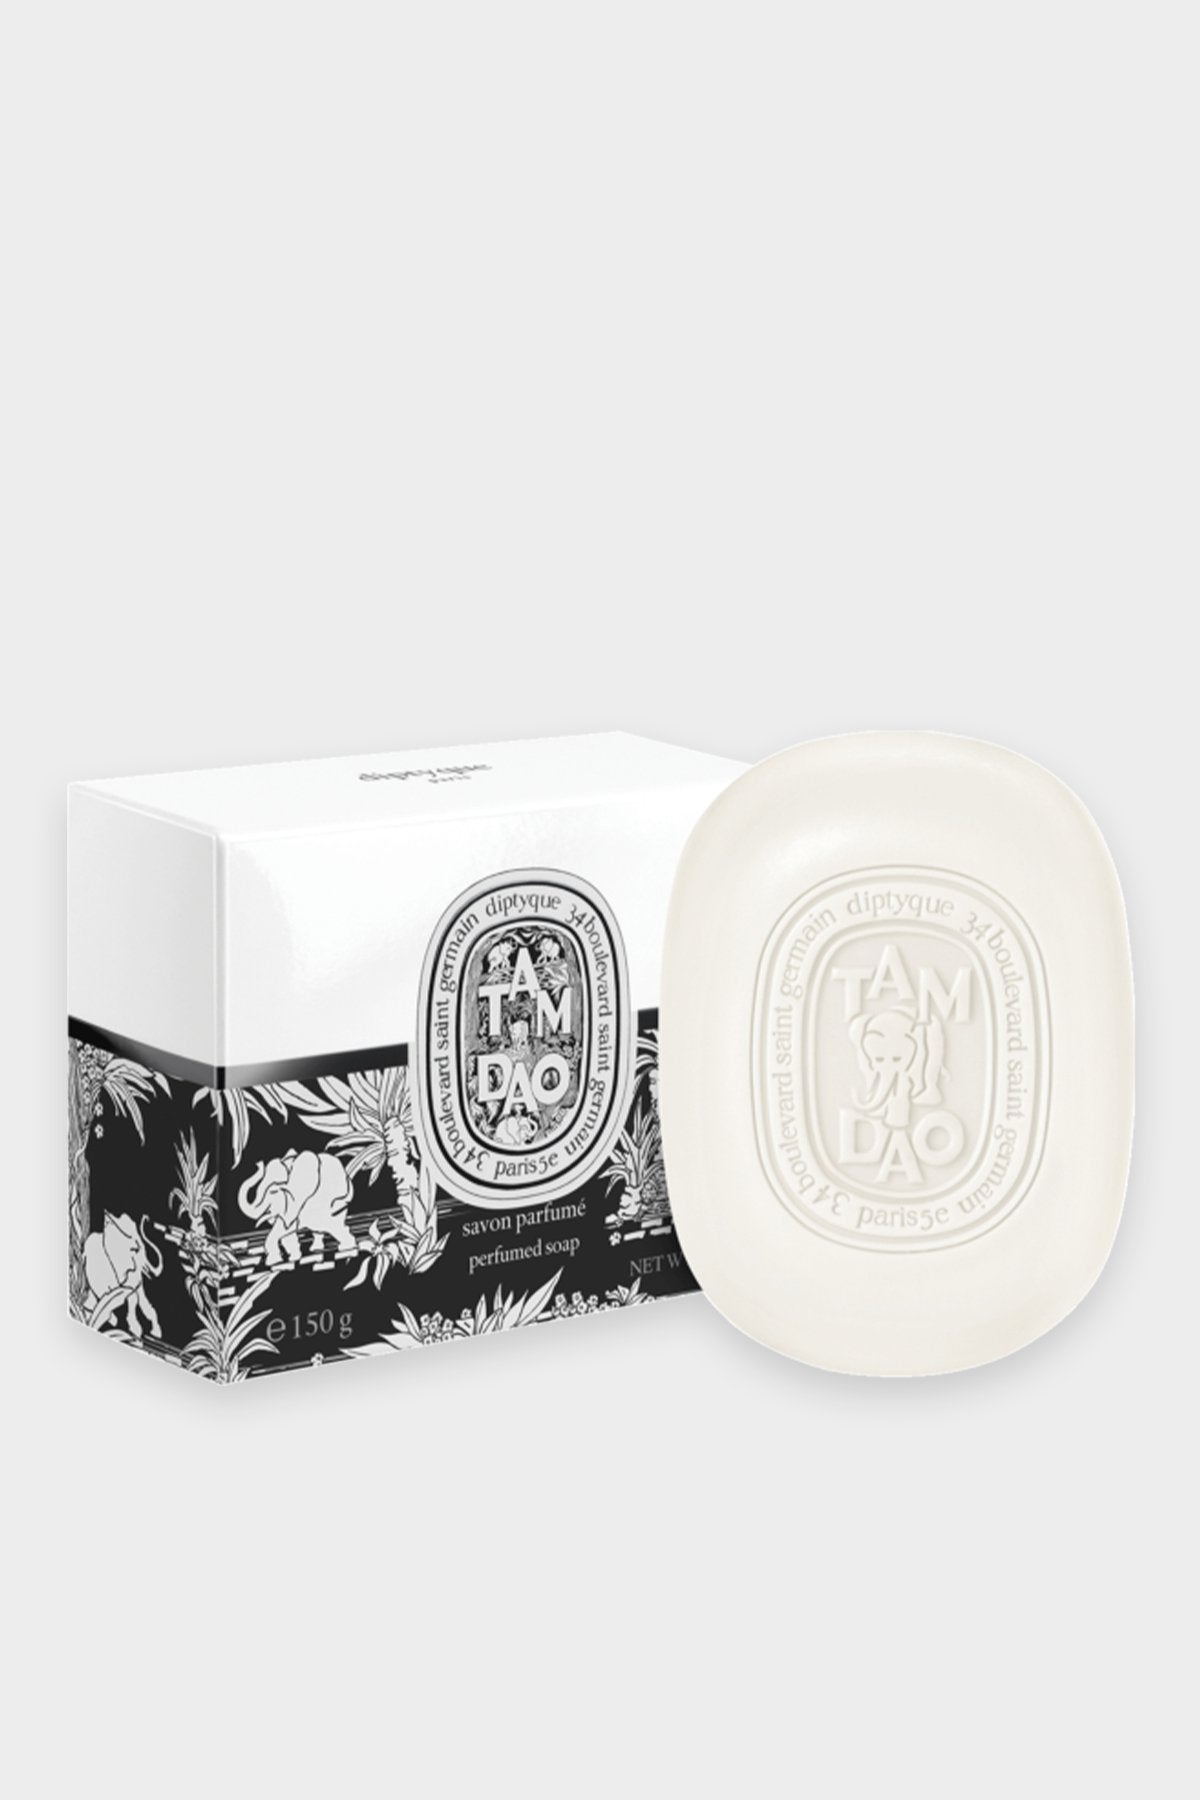 Tam Dao Perfumed Soap - shop-olivia.com